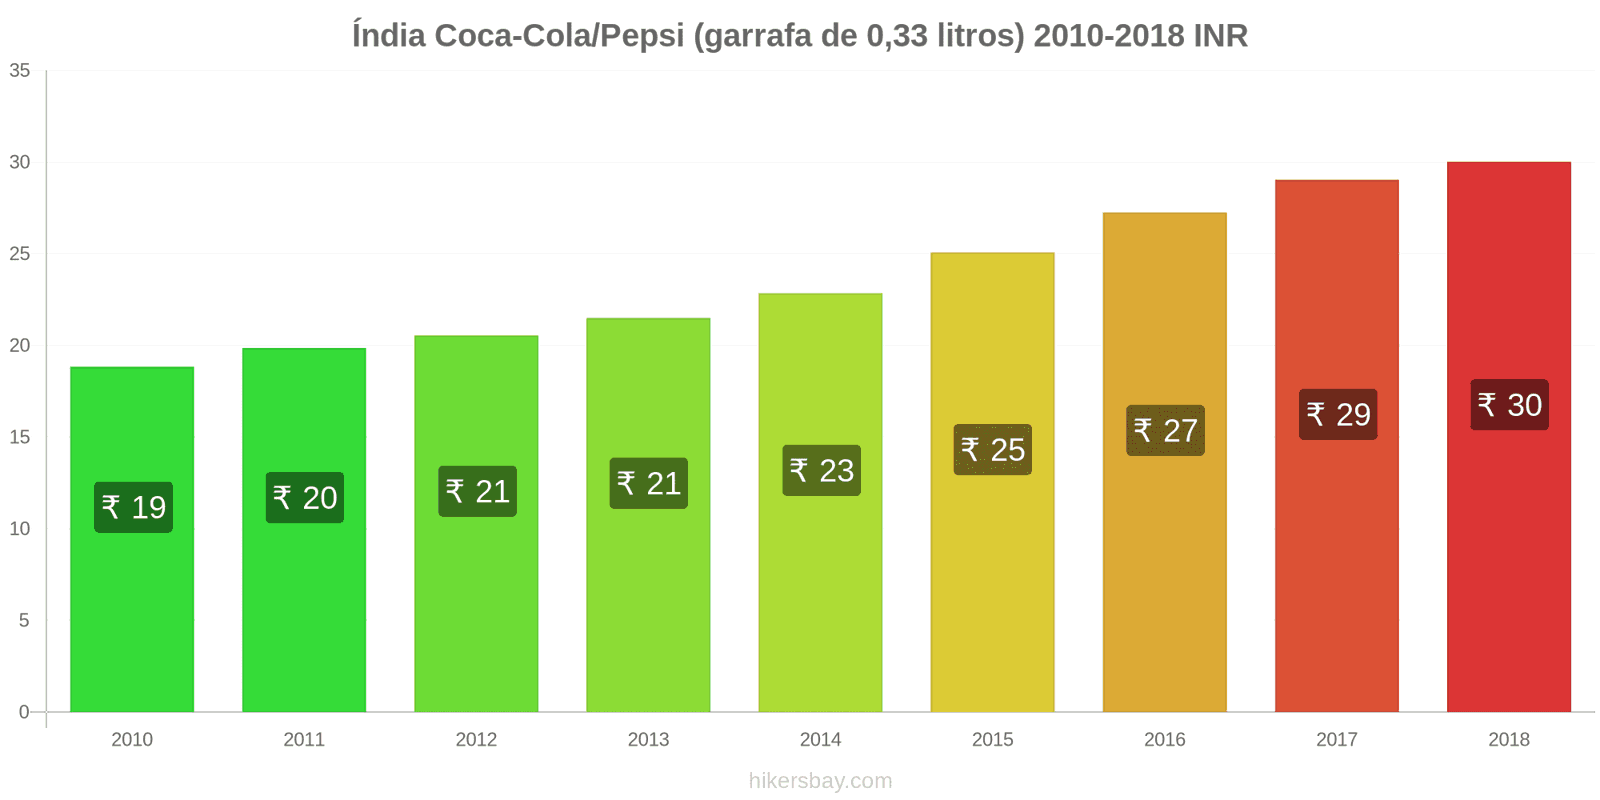 Índia mudanças de preços Coca-Cola/Pepsi (garrafa de 0.33 litros) hikersbay.com